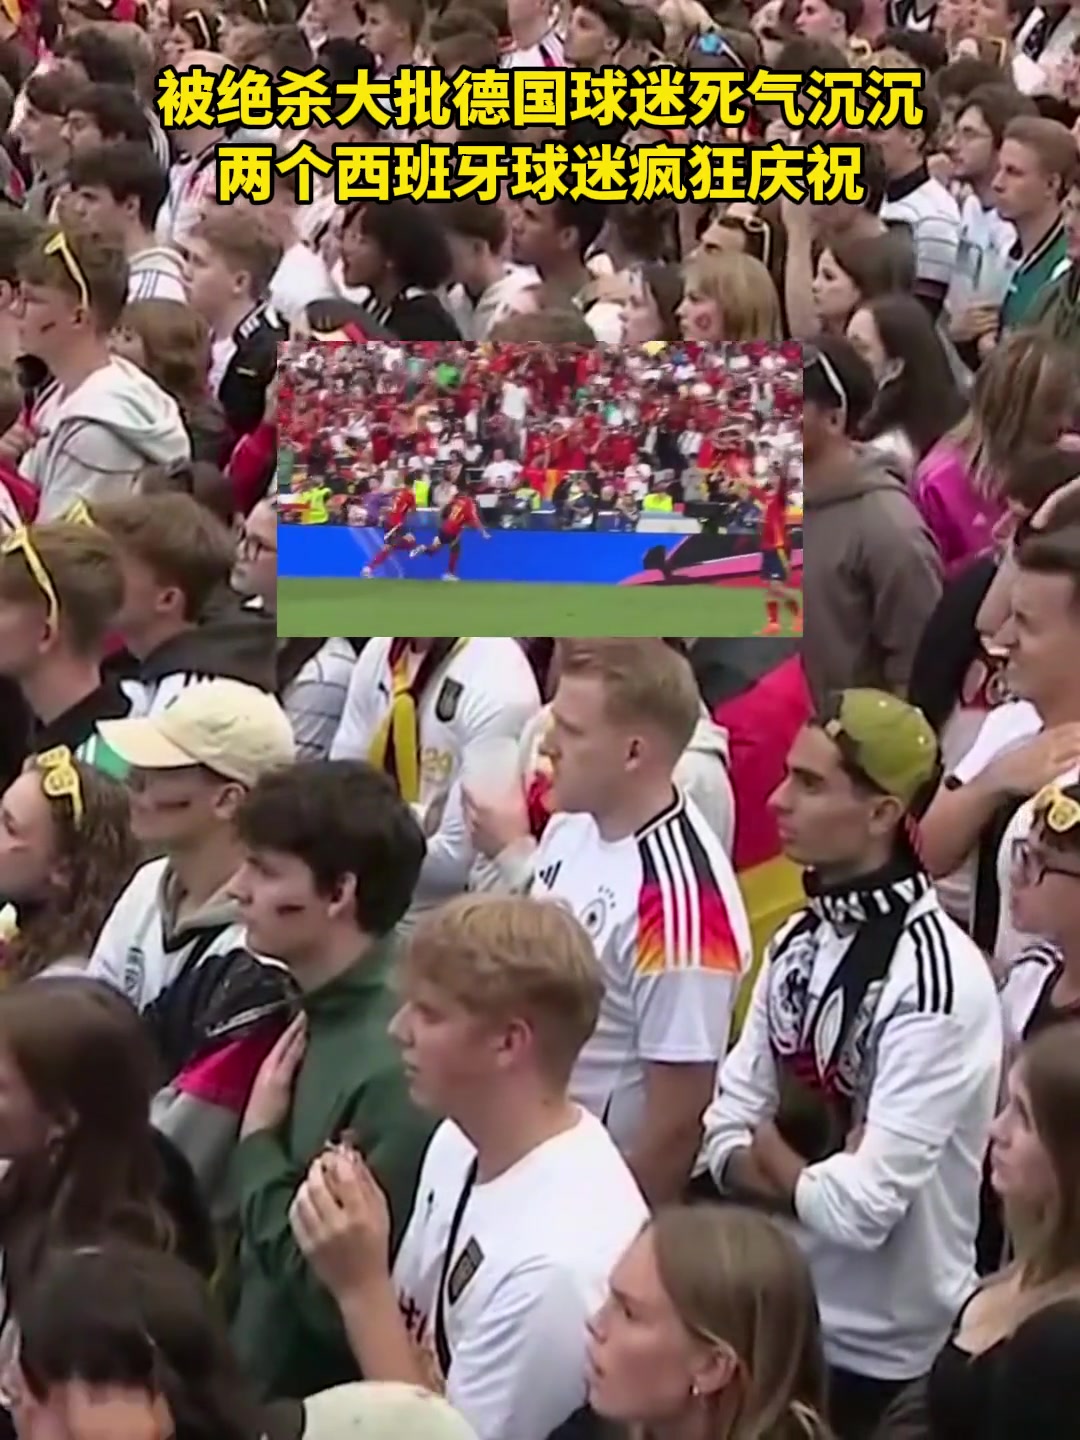  被绝杀！大批德国球迷死气沉沉 俩西班牙球迷疯狂庆祝